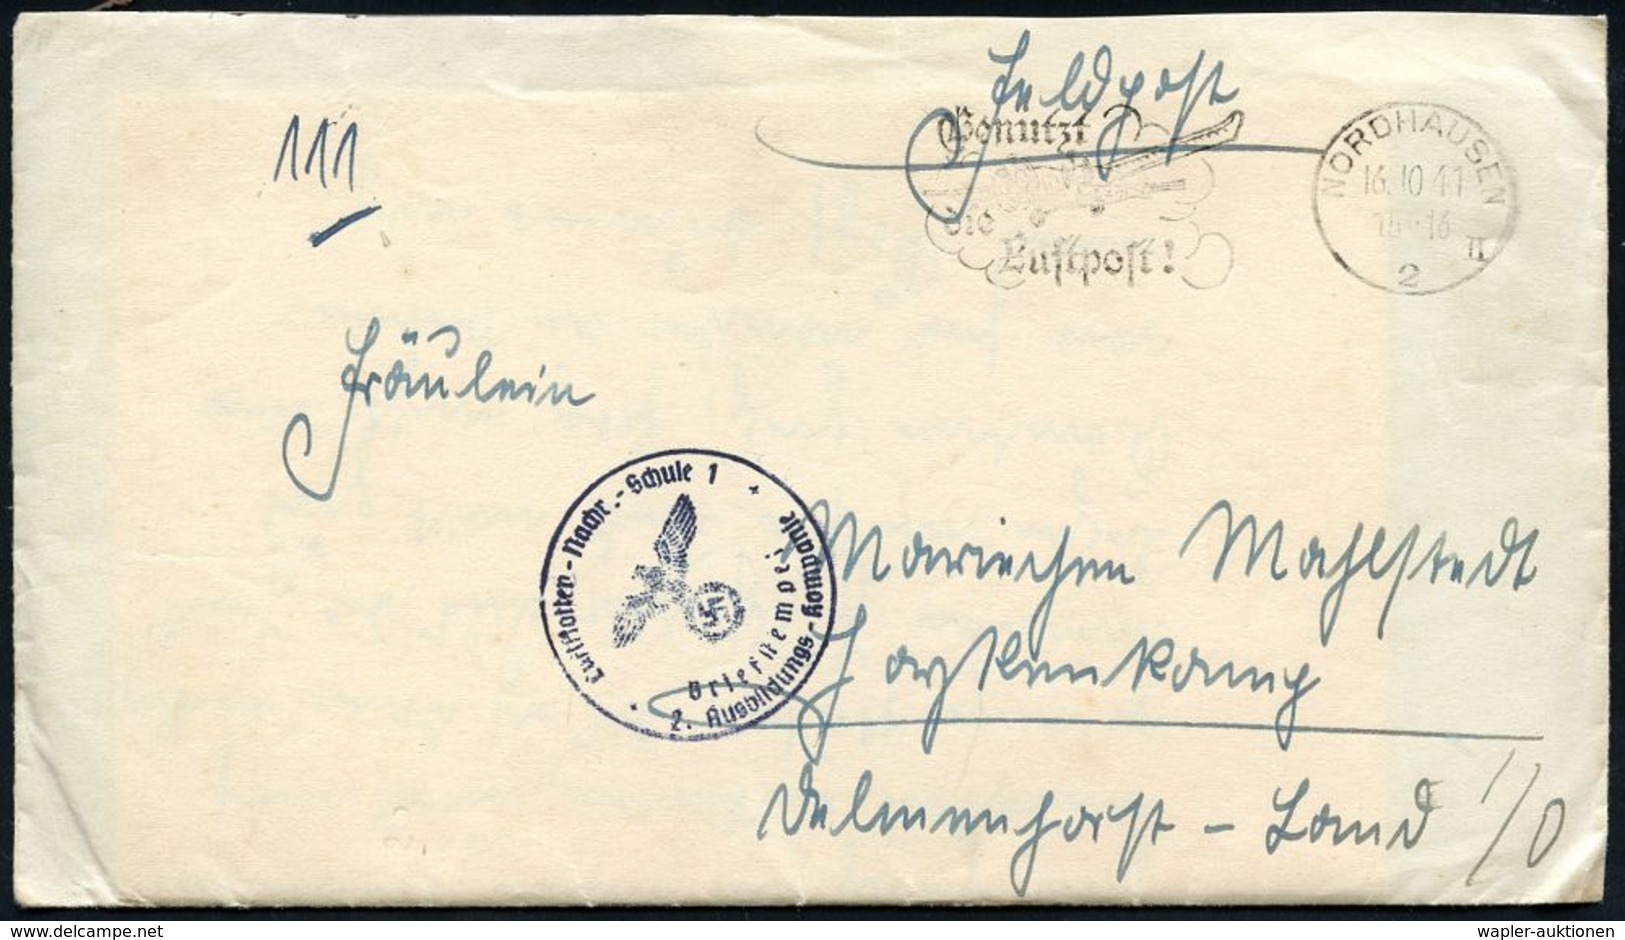 LUFTWAFFEN-FLUGSCHULEN & AKADEMIEN : NORDHAUSEN/ 2/ II/ Benutzt/ Die/ Luftpost! 1941 (14.10.) MWSt + Blauer 1K-HdN: Luft - Flugzeuge